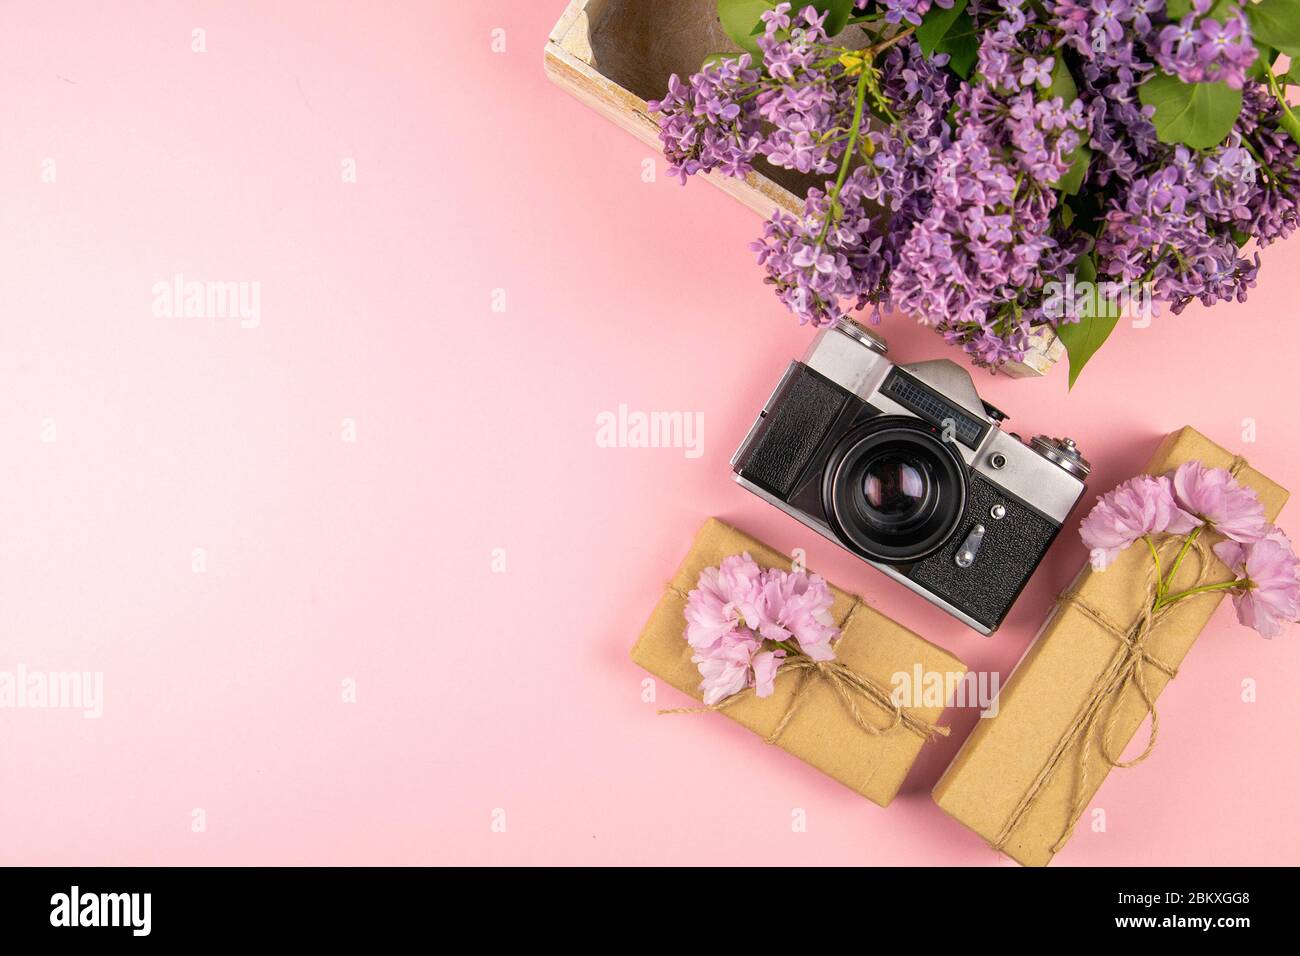 Macchina fotografica, regalo e un bellissimo lilla viola. Mese - Maggio,  Giugno e Luglio. Viste dall'alto con spazio libero Foto stock - Alamy